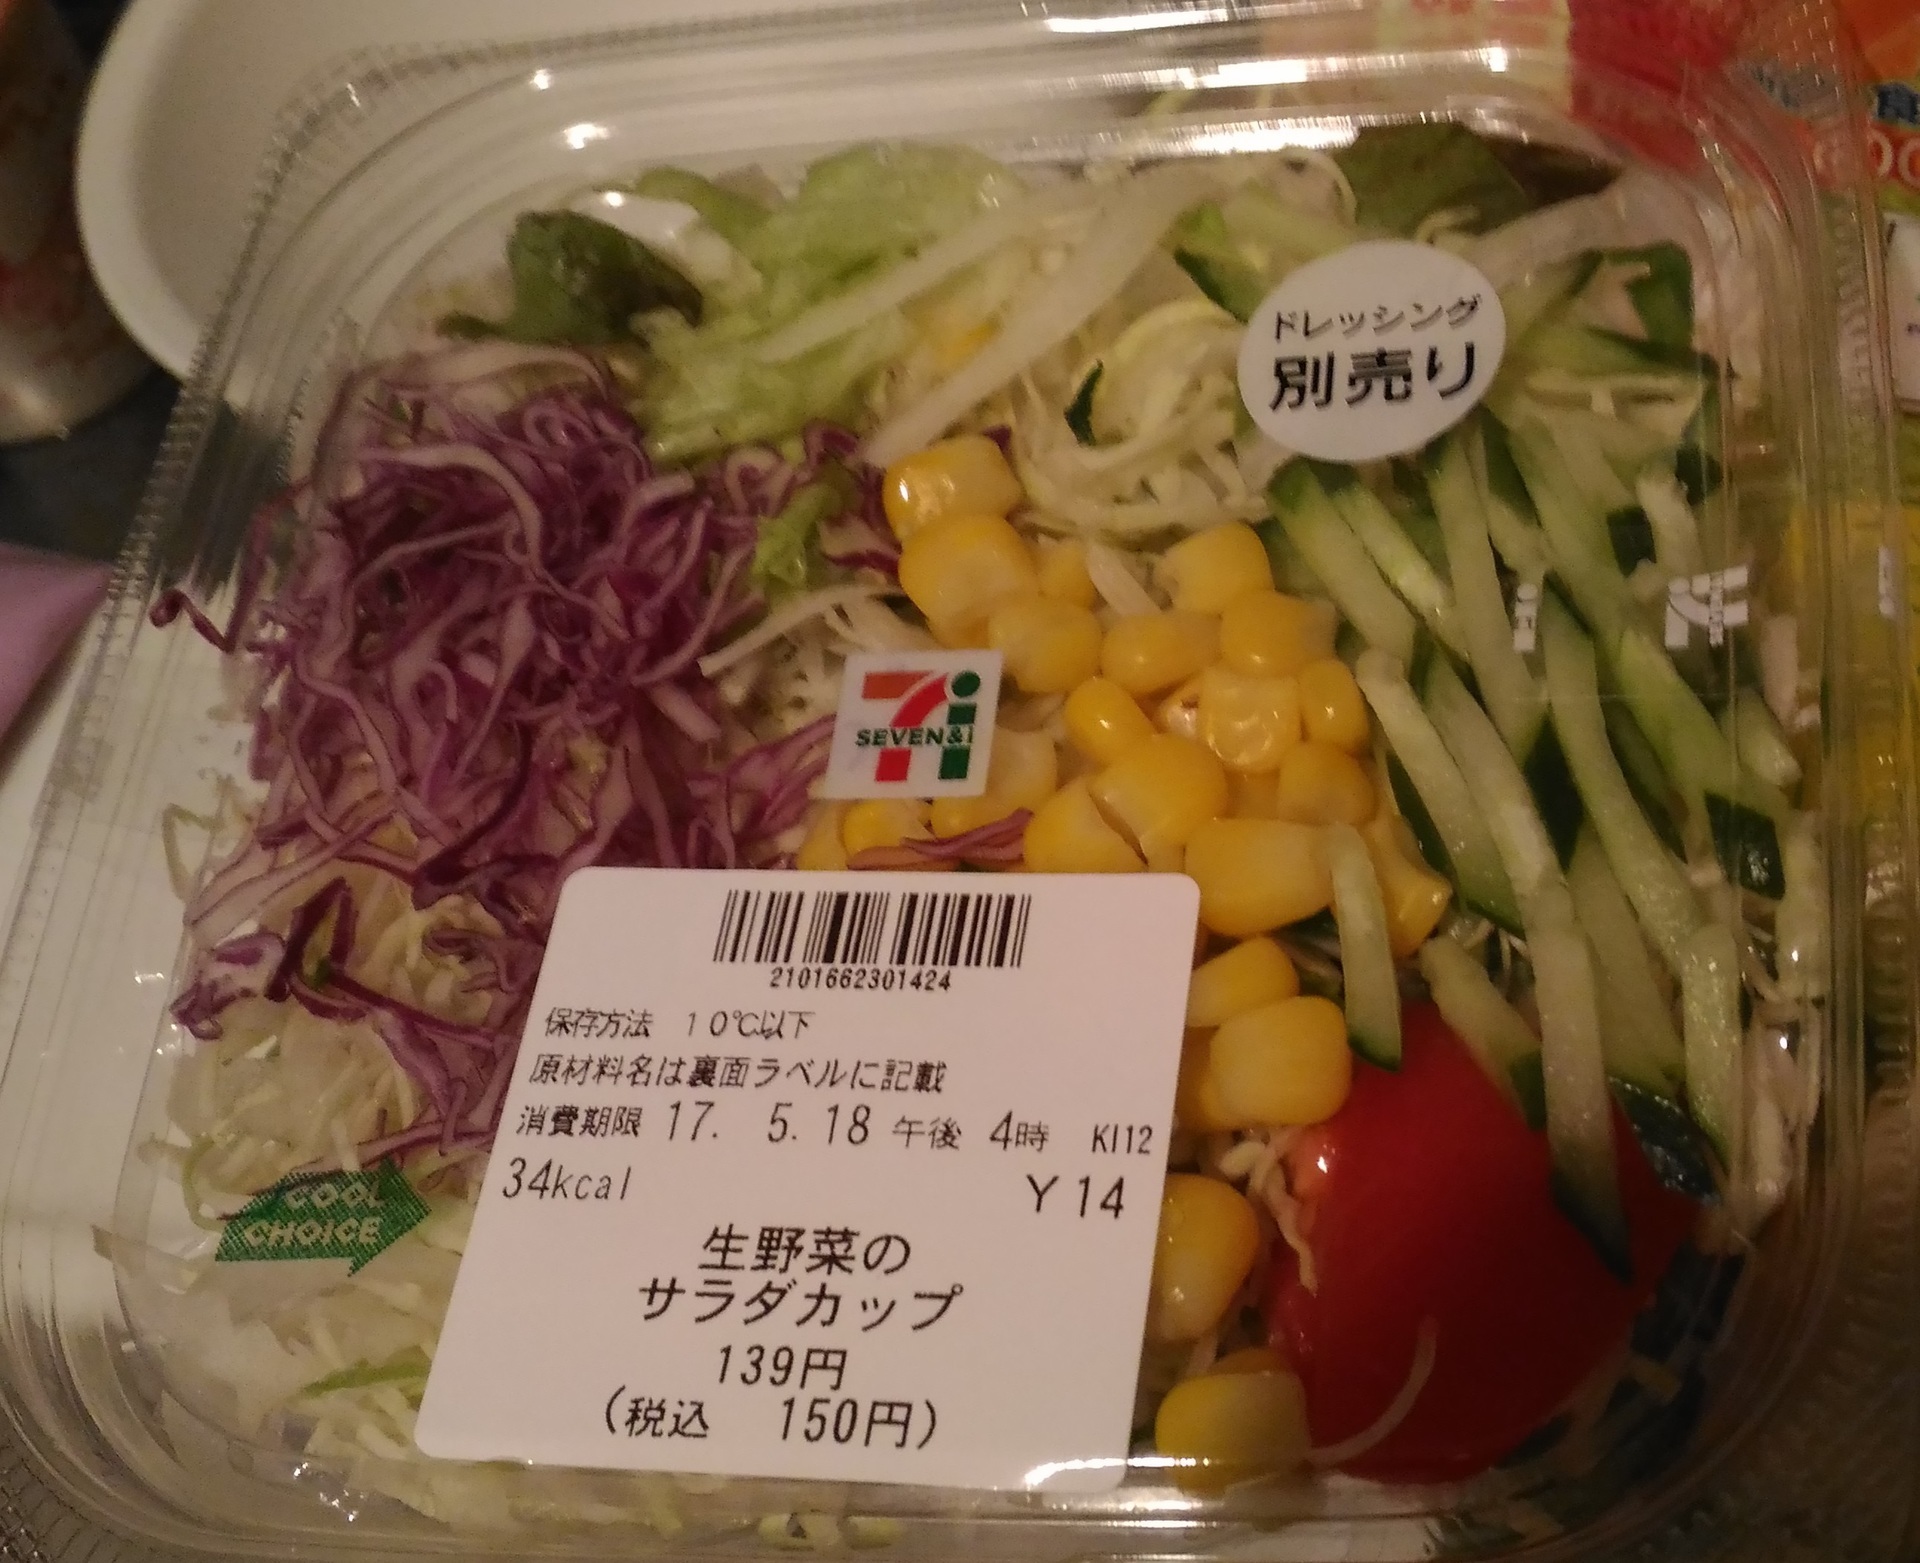 セブンイレブン サラダと言えば 生野菜サラダカップ 150円 セブンイレブン人気おすすめ おにぎりお惣菜新作種類ブログで